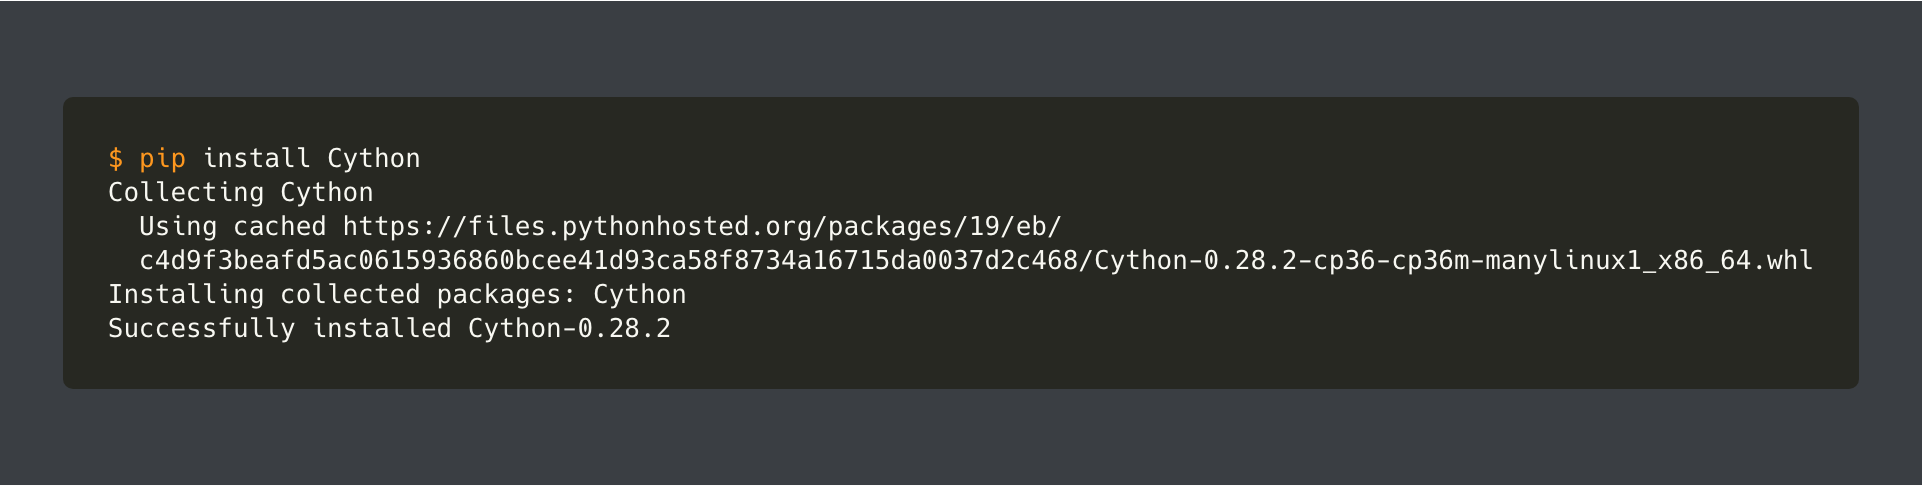 pip install cython2